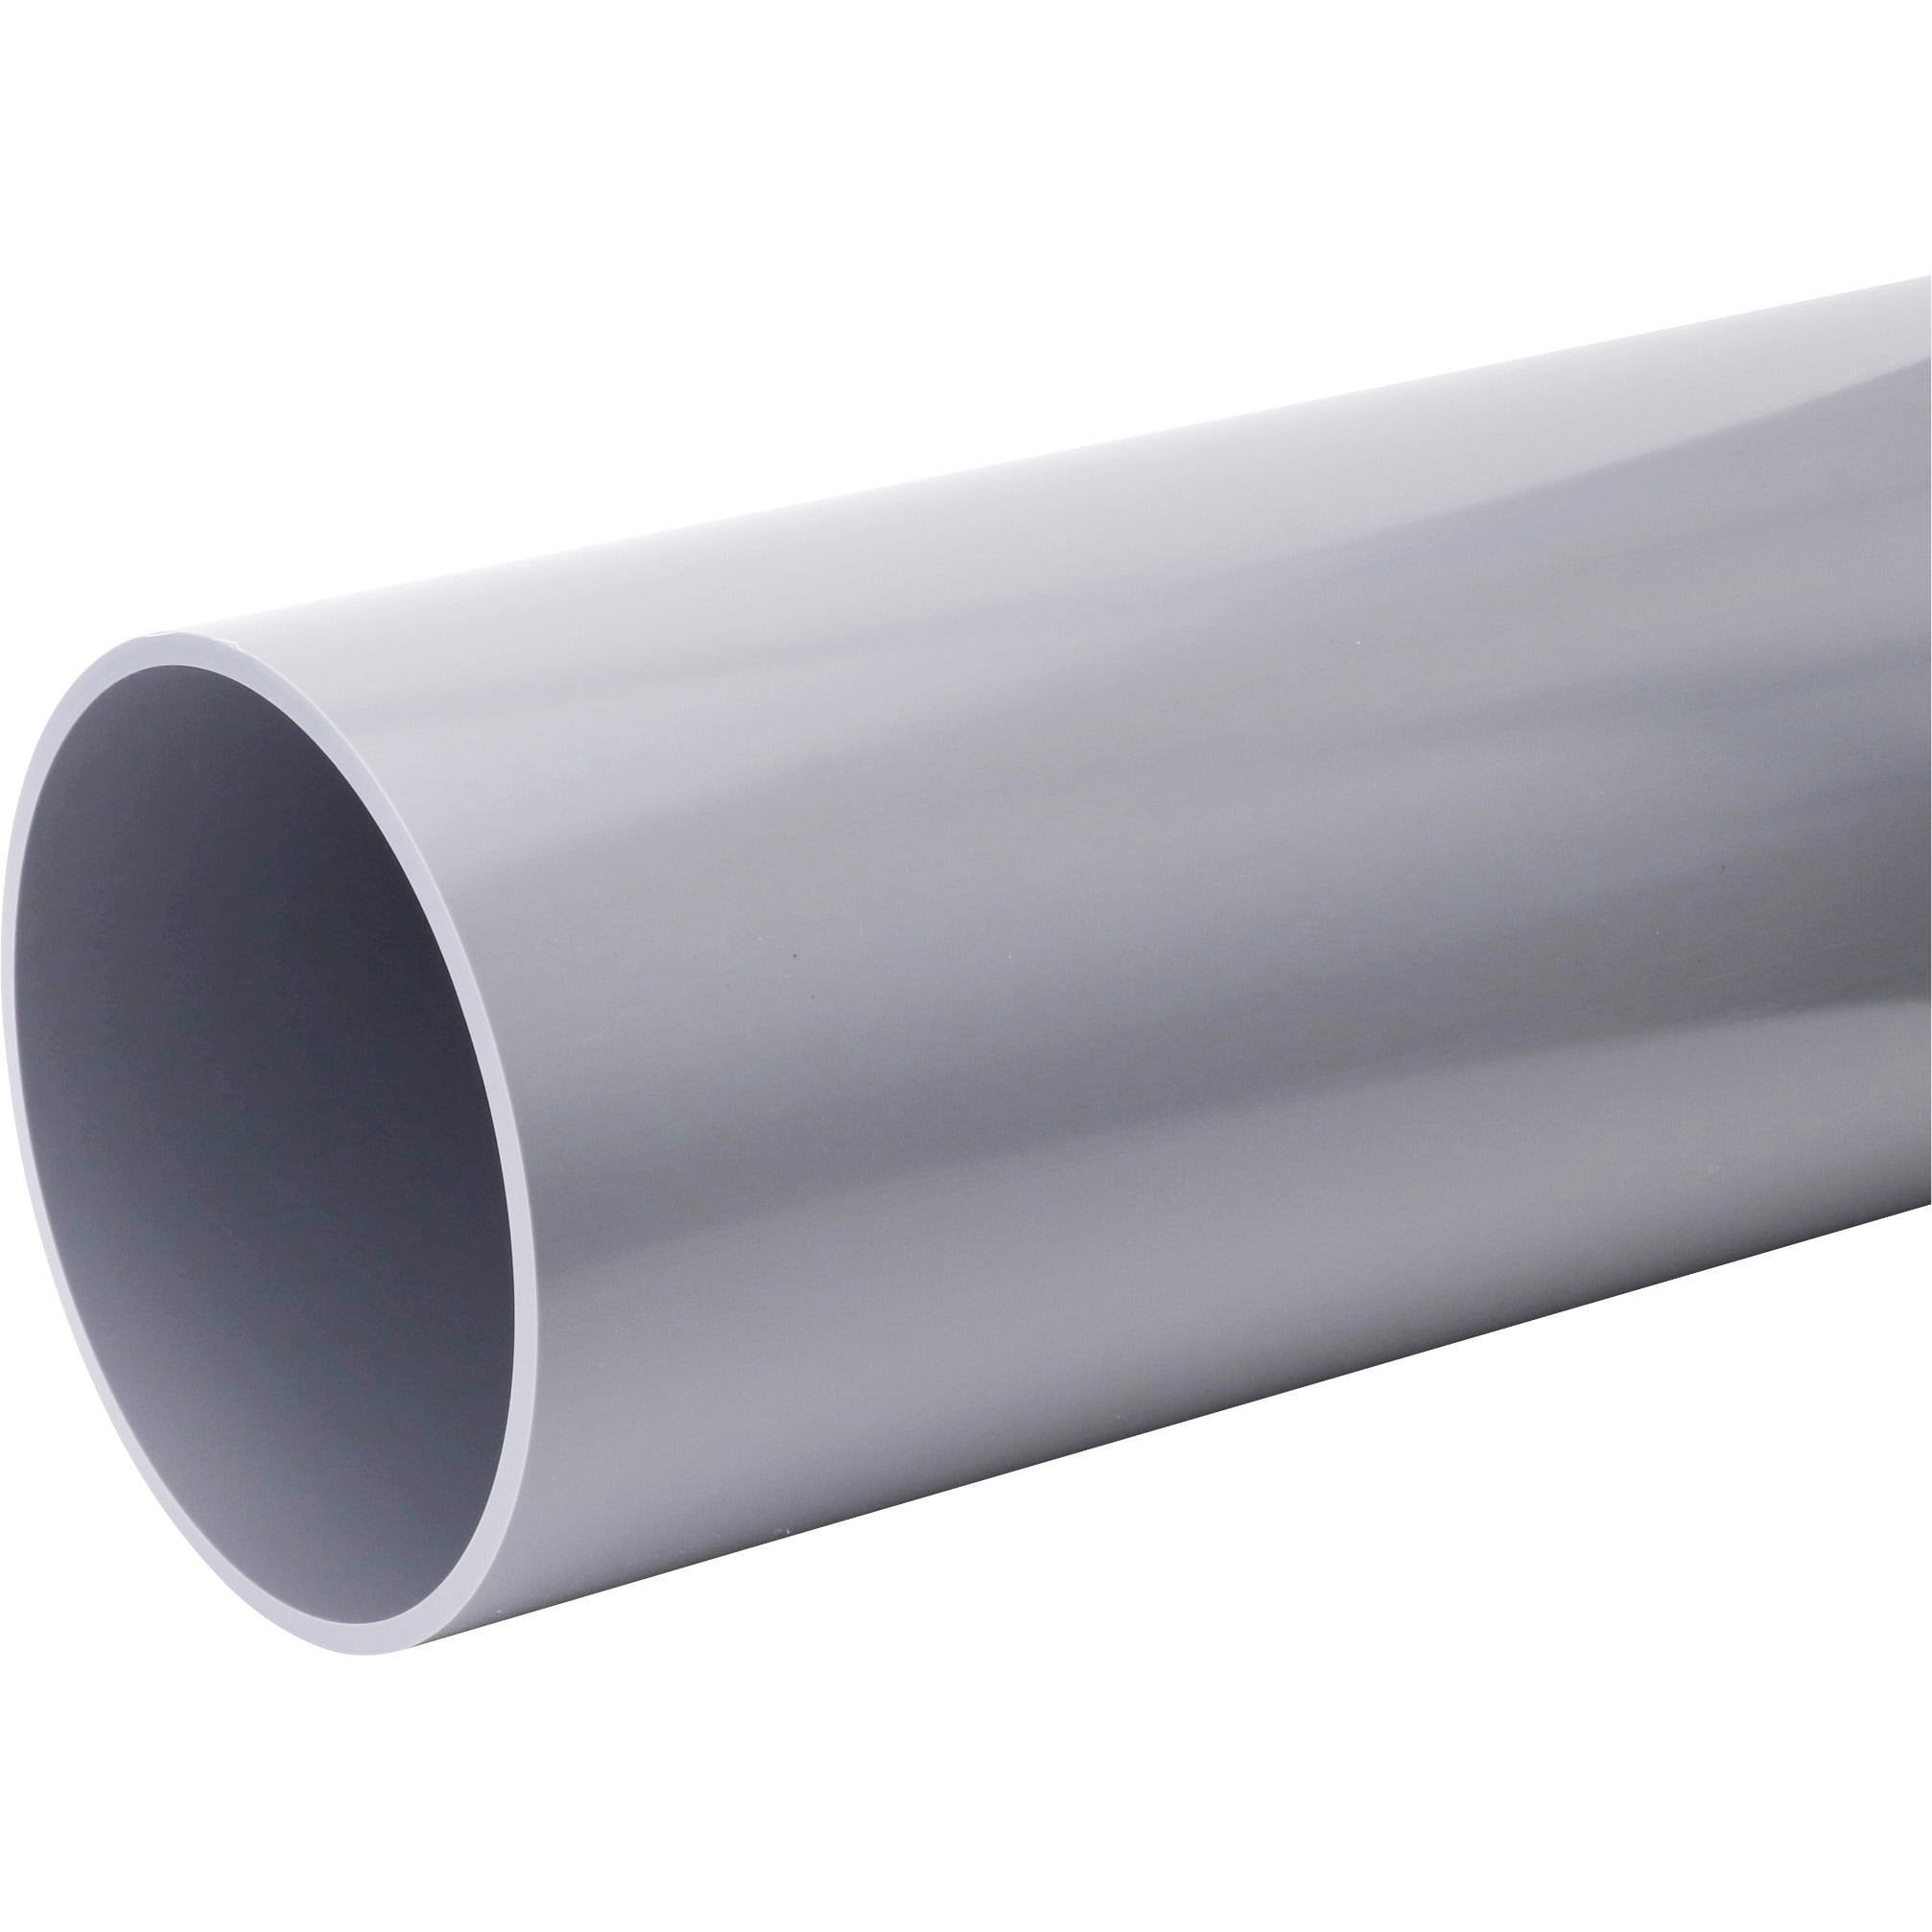 ボイド管 ( スリーブ ) 径500mm×1505mm〜2000mm カット販売 - 材料、資材